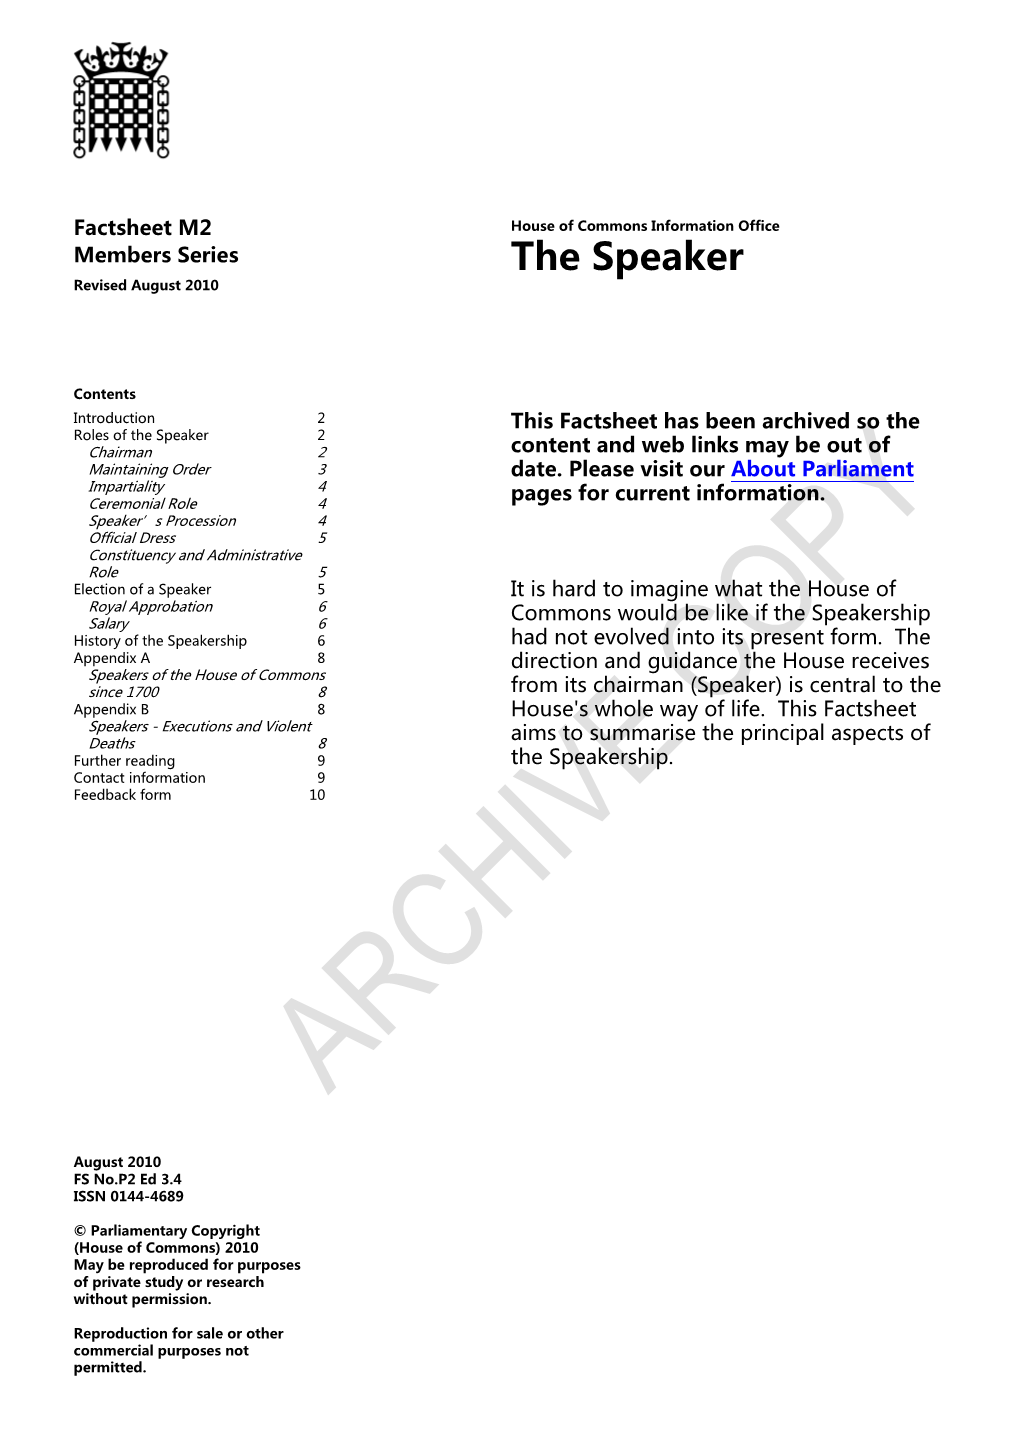 The Speaker Revised August 2010